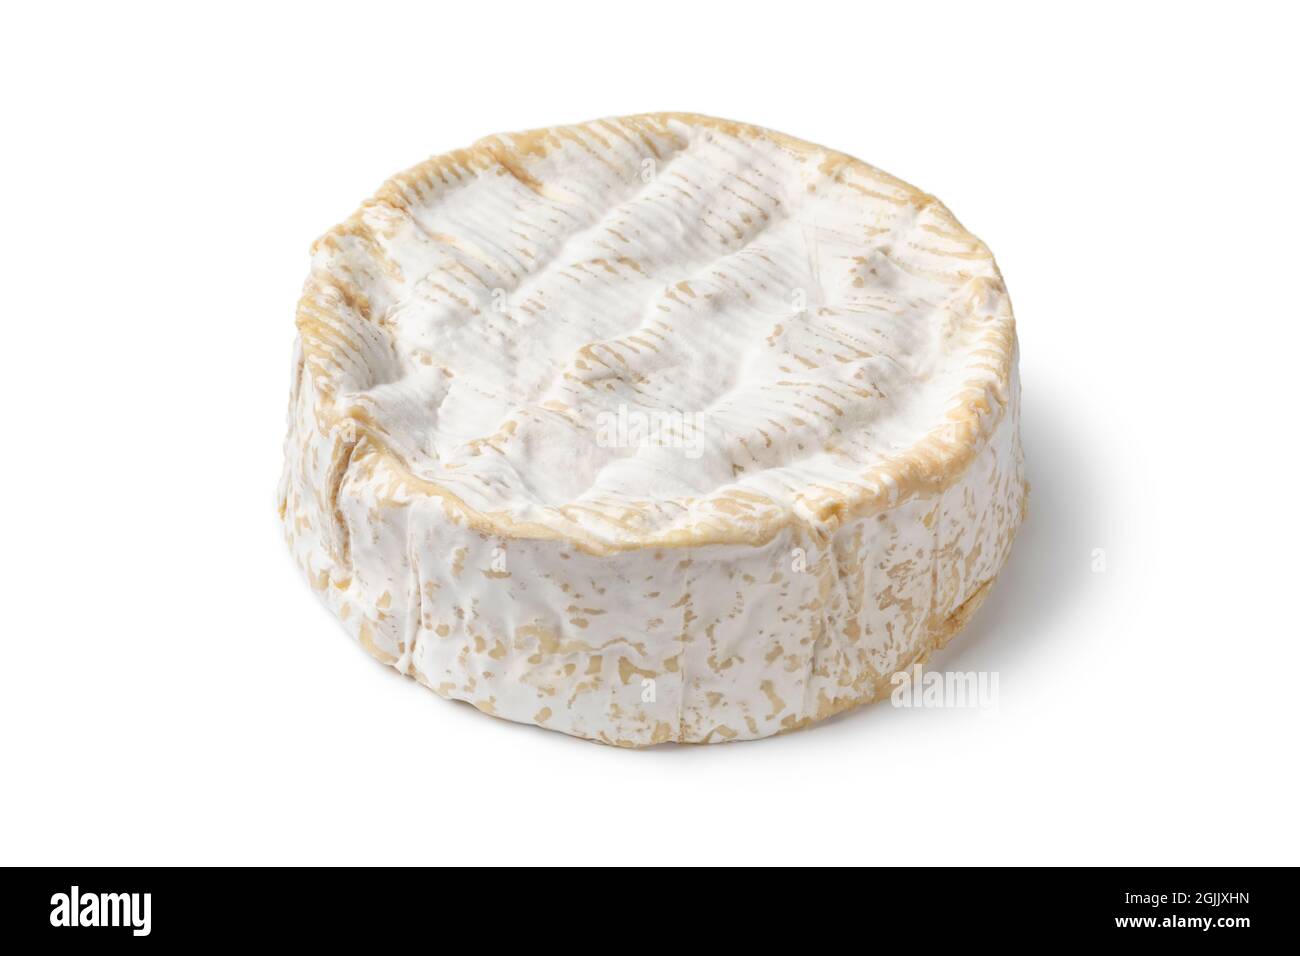 Tradicional queso Camembert francés entero aislado sobre fondo blanco Foto de stock